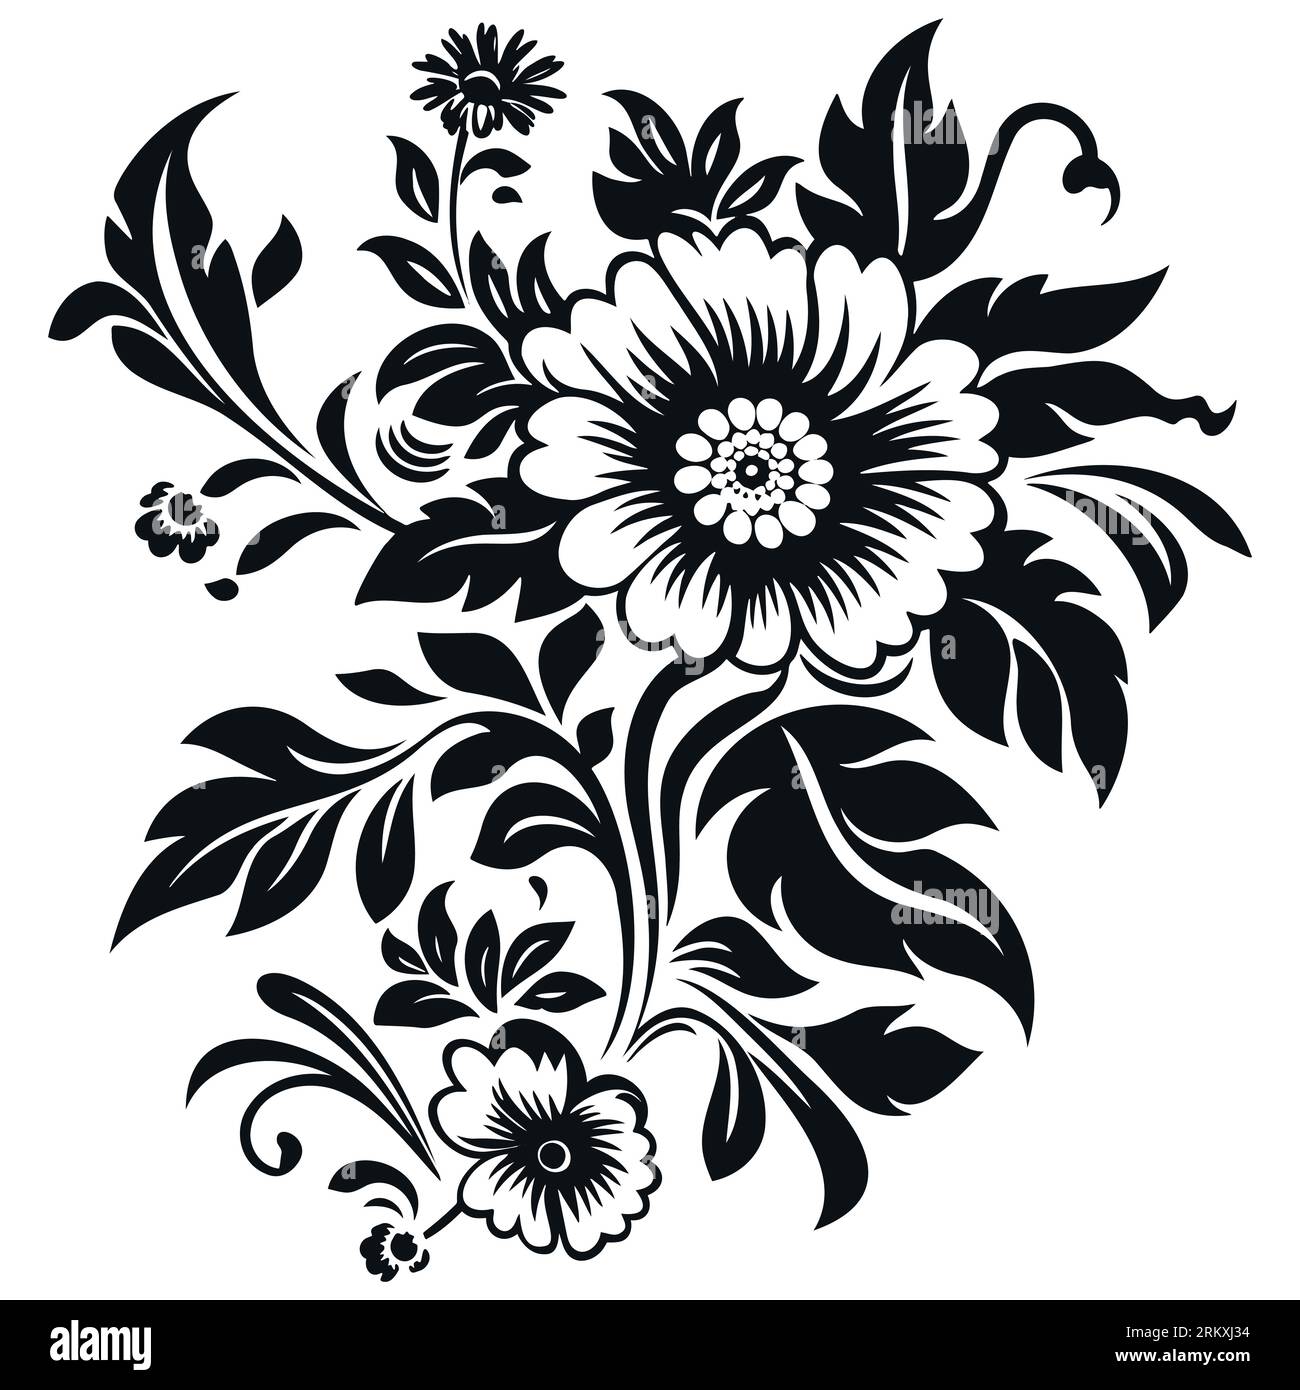 Blumenschmuck, Gravur, Rand, florales Retro-Muster, antiker Stil, acanthus, Laub, Wirbel, dekoratives Designelement Stock Vektor